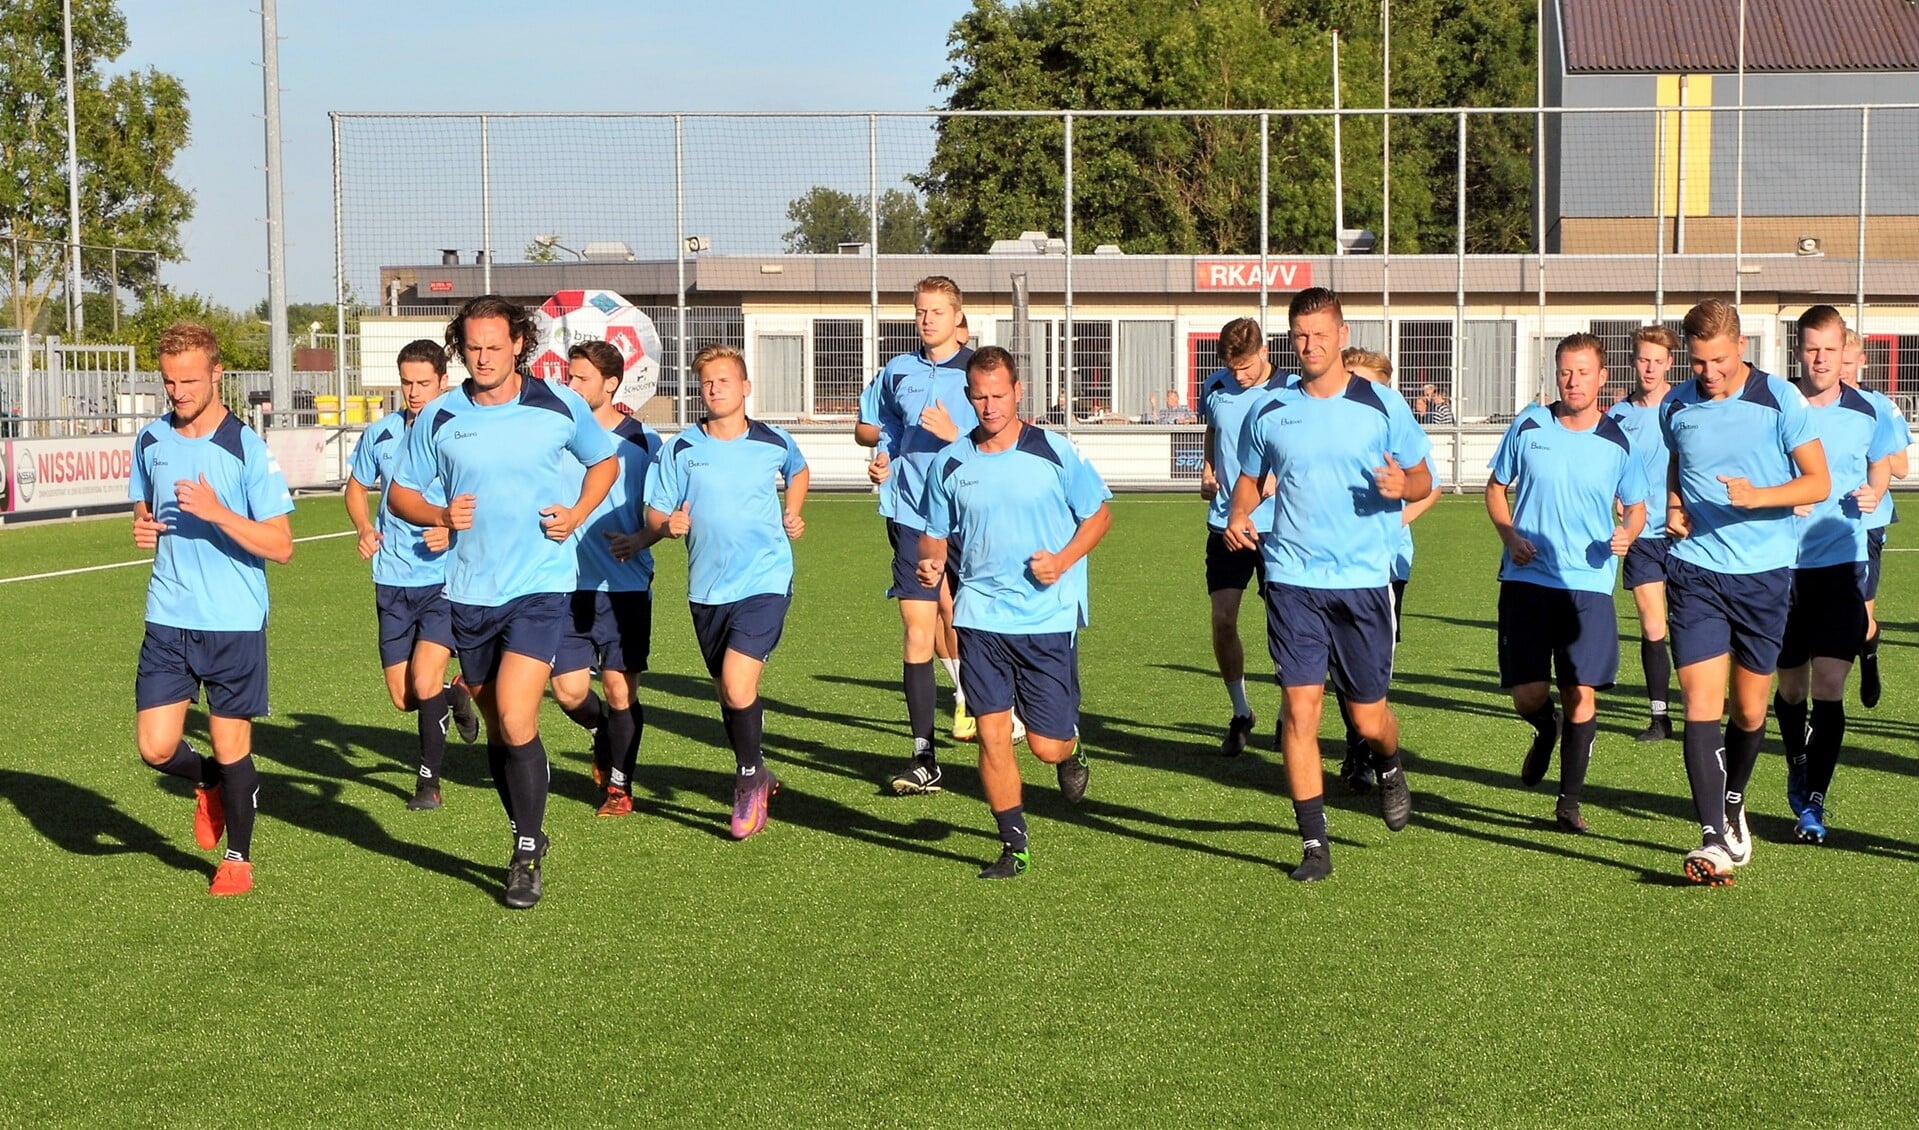 Maandagavond startte RKAVV met de 2e trainingsweek. Zaterdag oefent het nog thuis tegen FC Rijnvogels (14:30 uur) (foto: Jelle Abma).